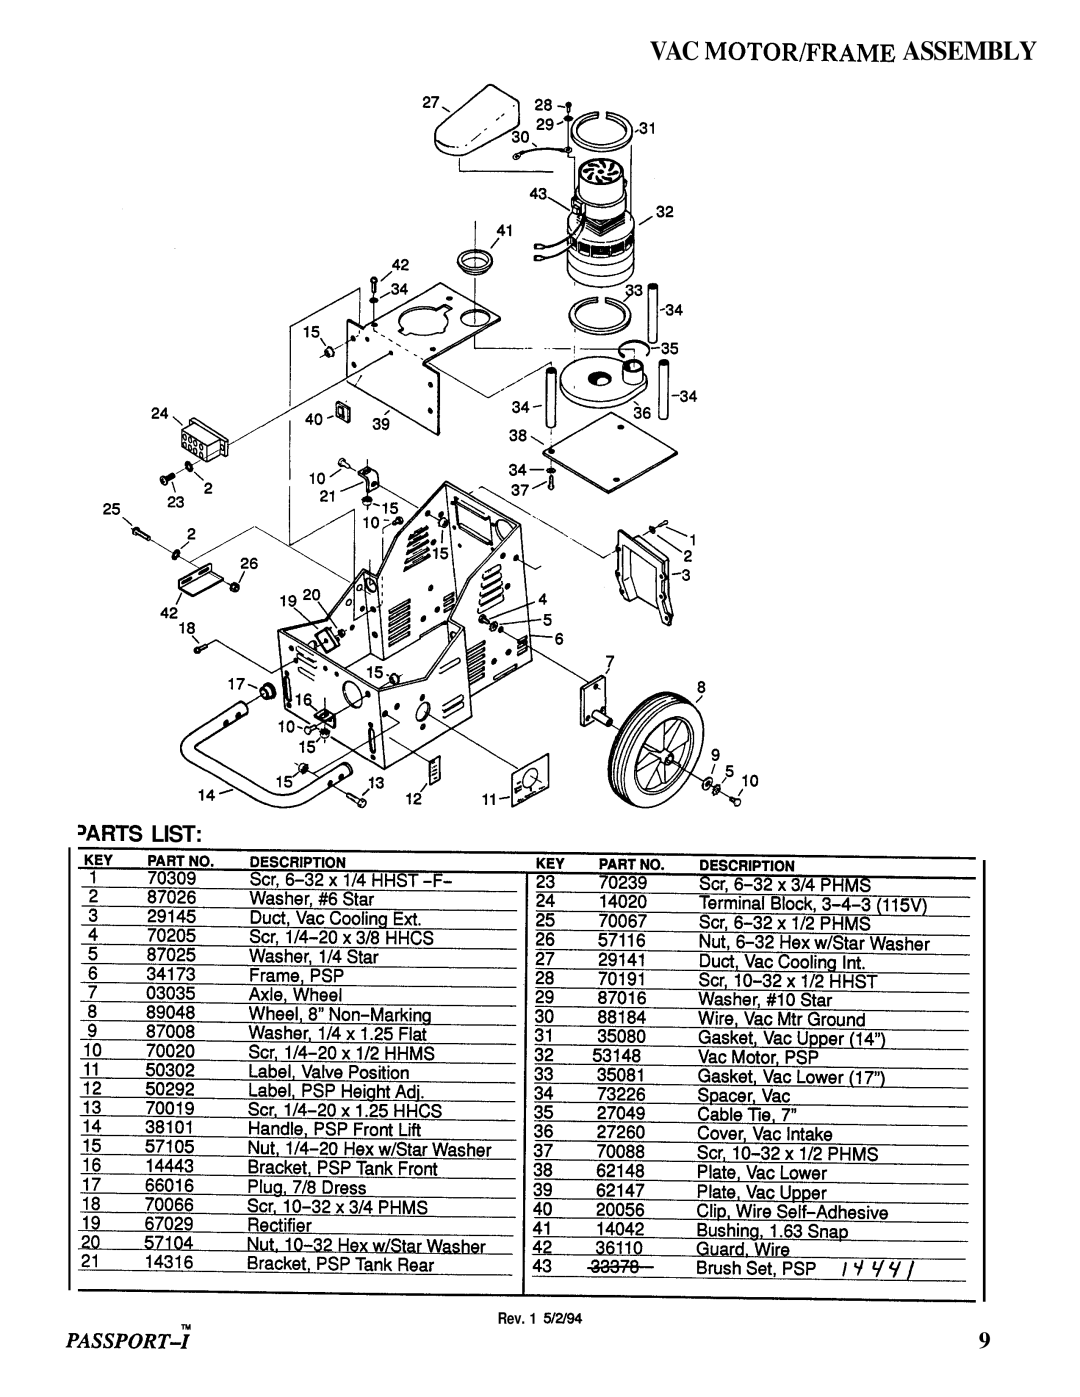 Windsor PSP-IG manual Vac Motorbrame Assembly, Passport-Y, Arts List, Rev. 1 5/2/94 